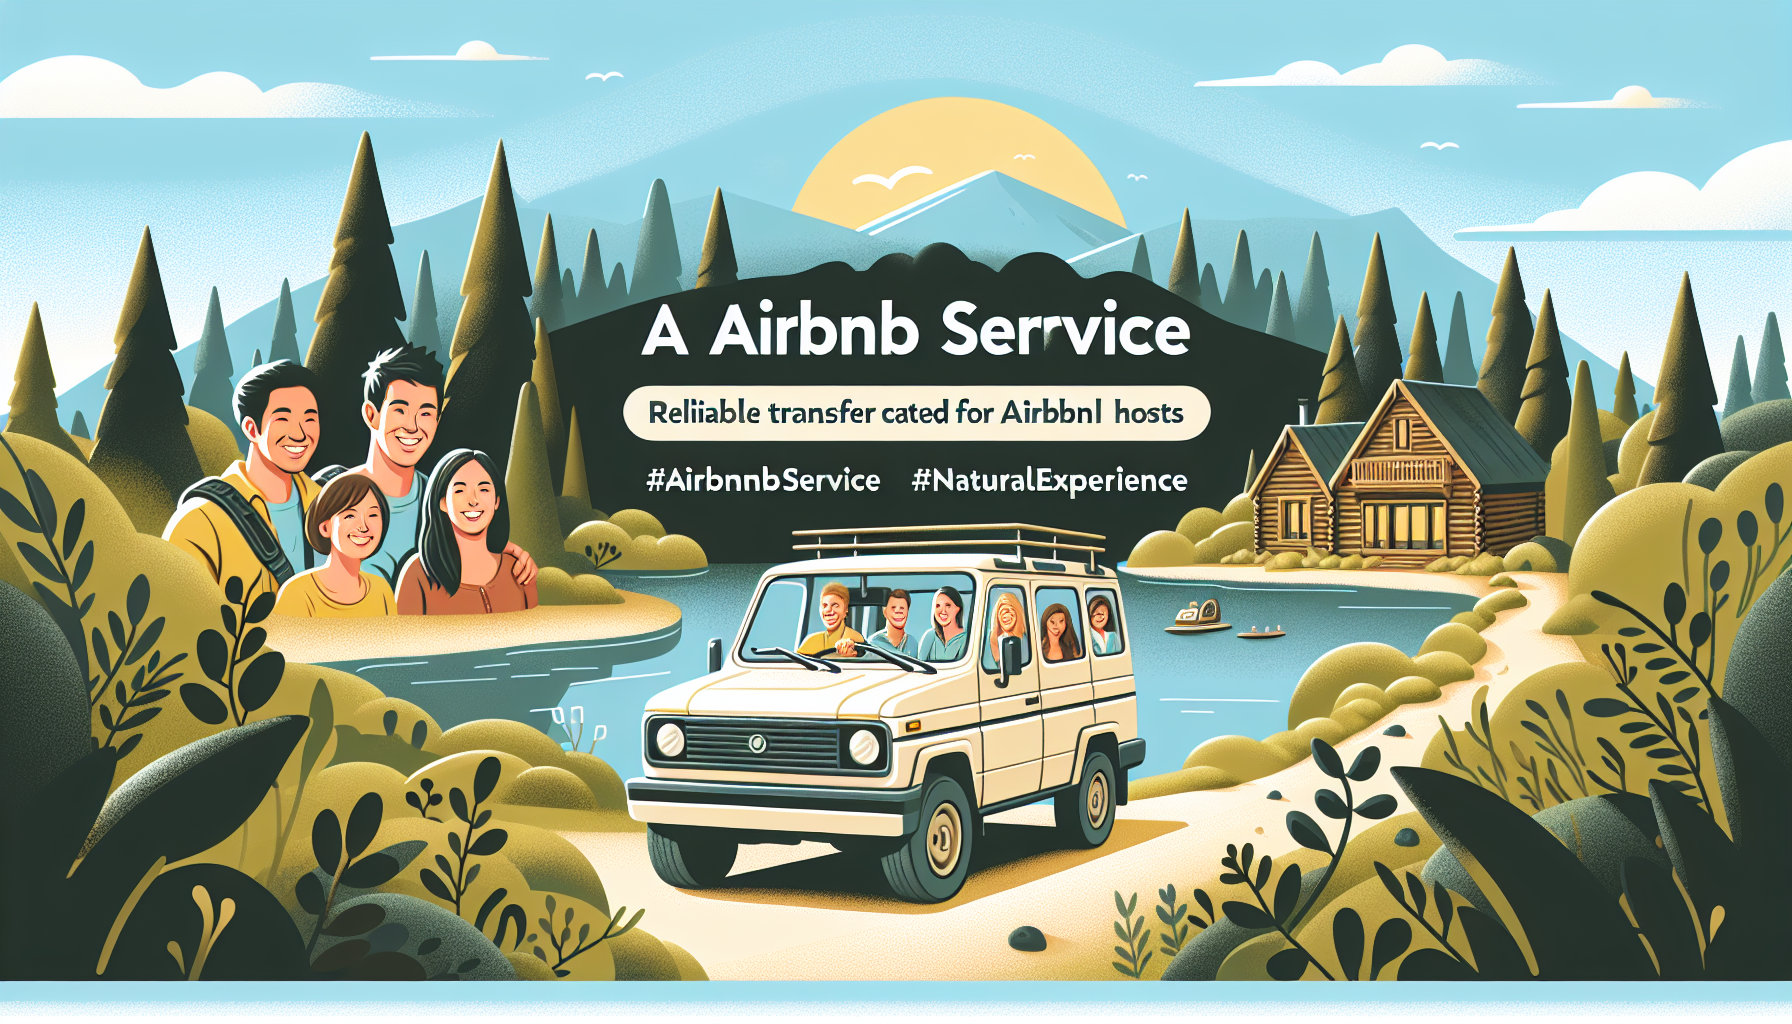 découvrez un service de transfert pour les clients airbnb pour faciliter leurs déplacements lors de leur séjour.